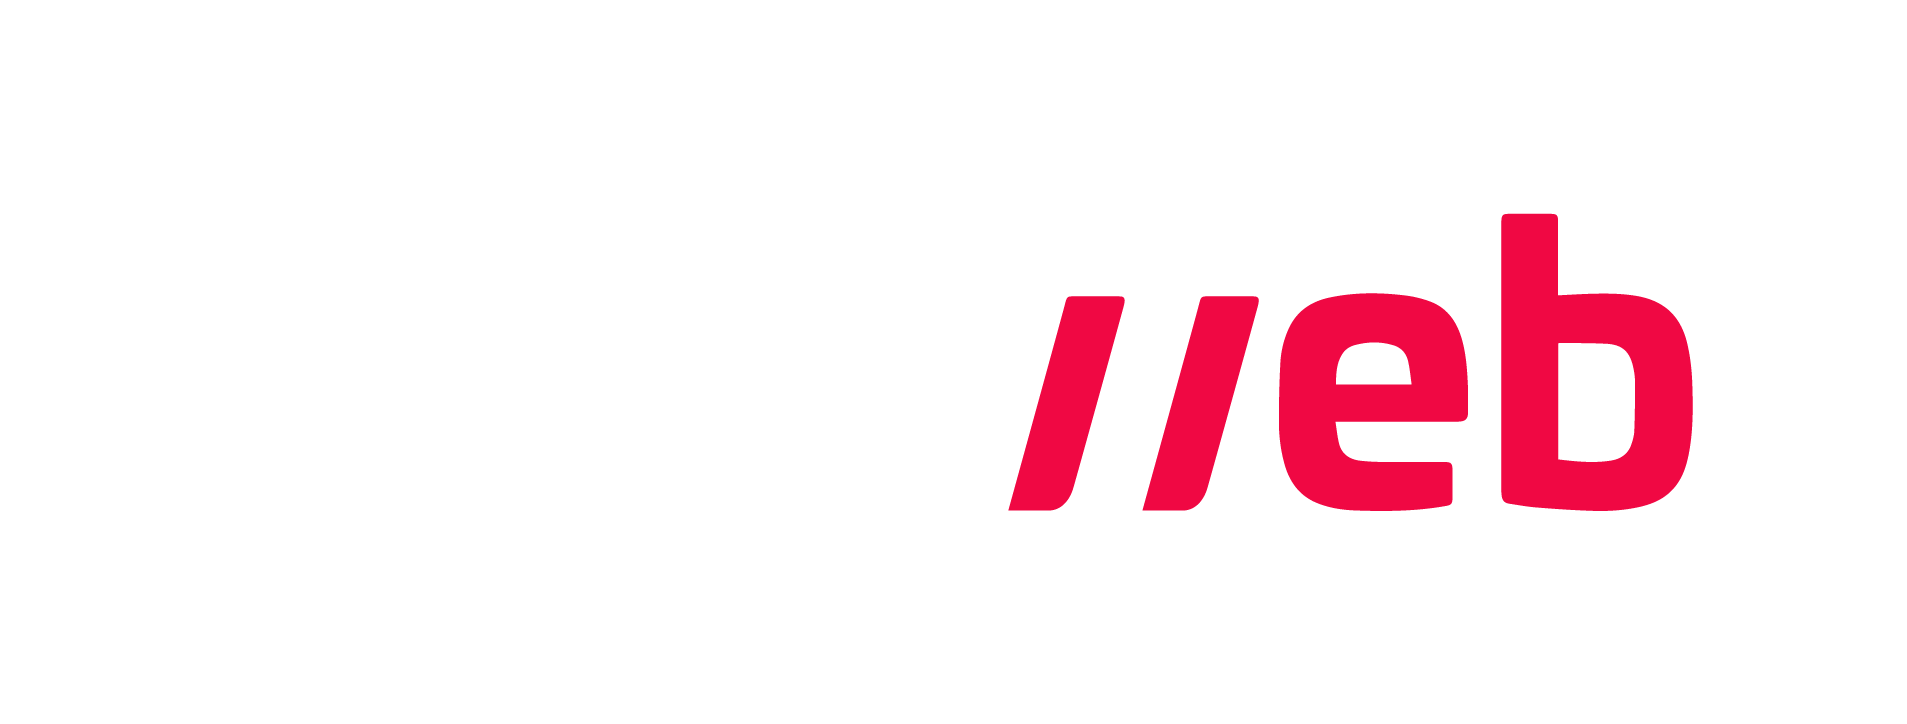 Locaweb Logo - Os Melhores Artigos Sobre Lojas Virtuais. Escola De E Commerce